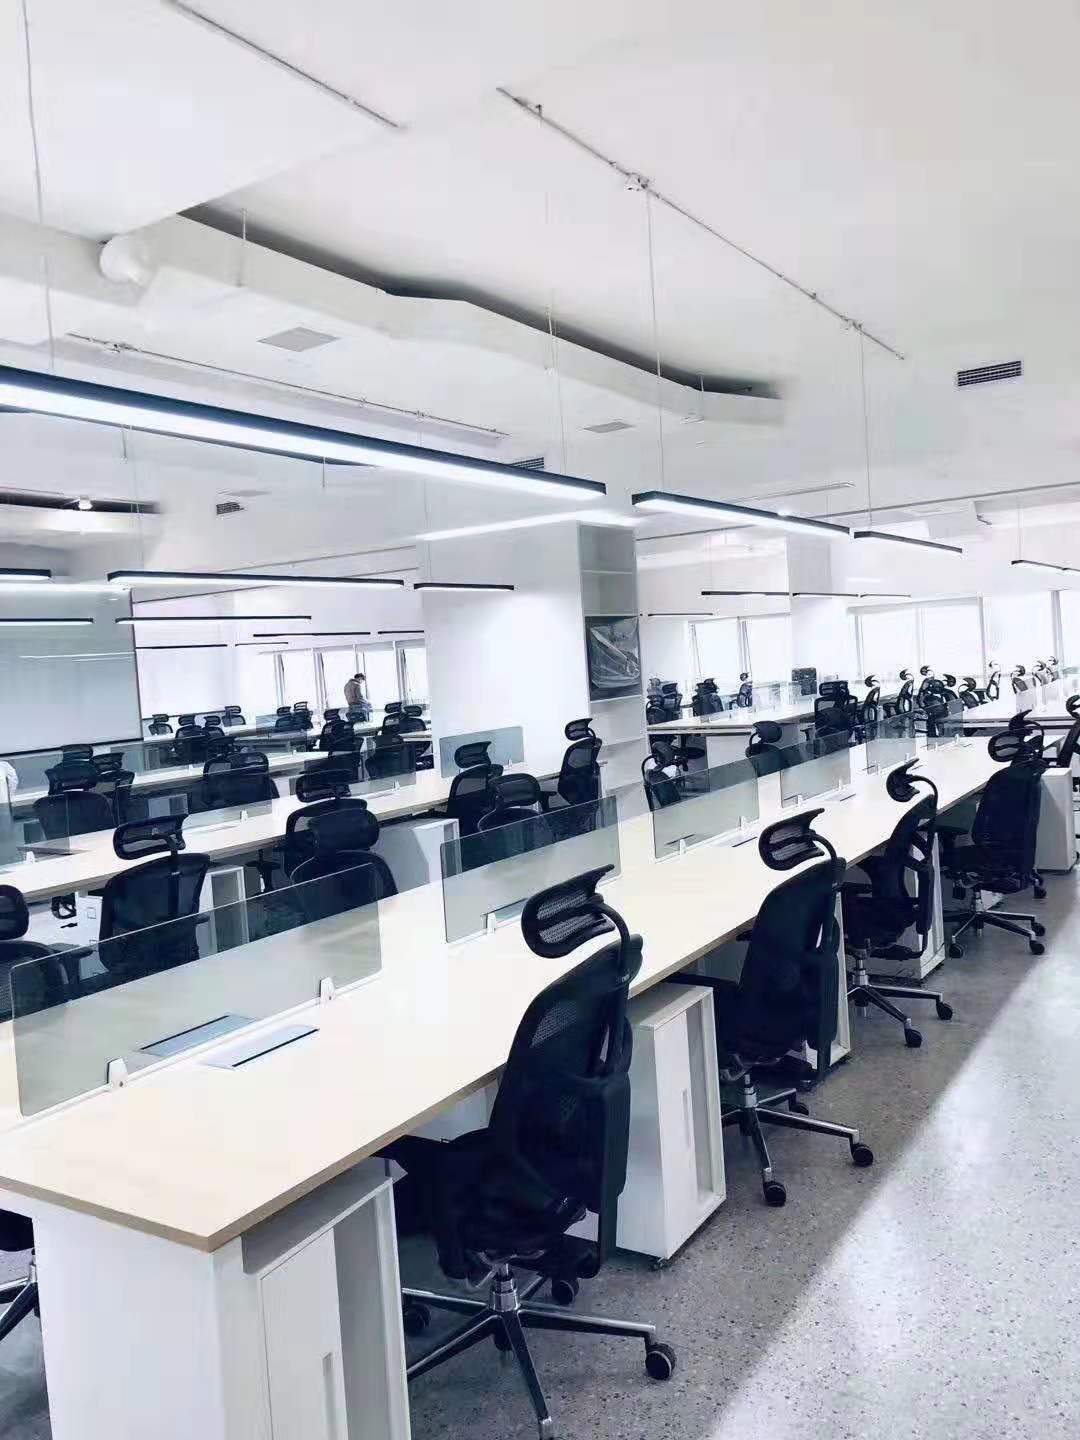 板式电脑办公桌